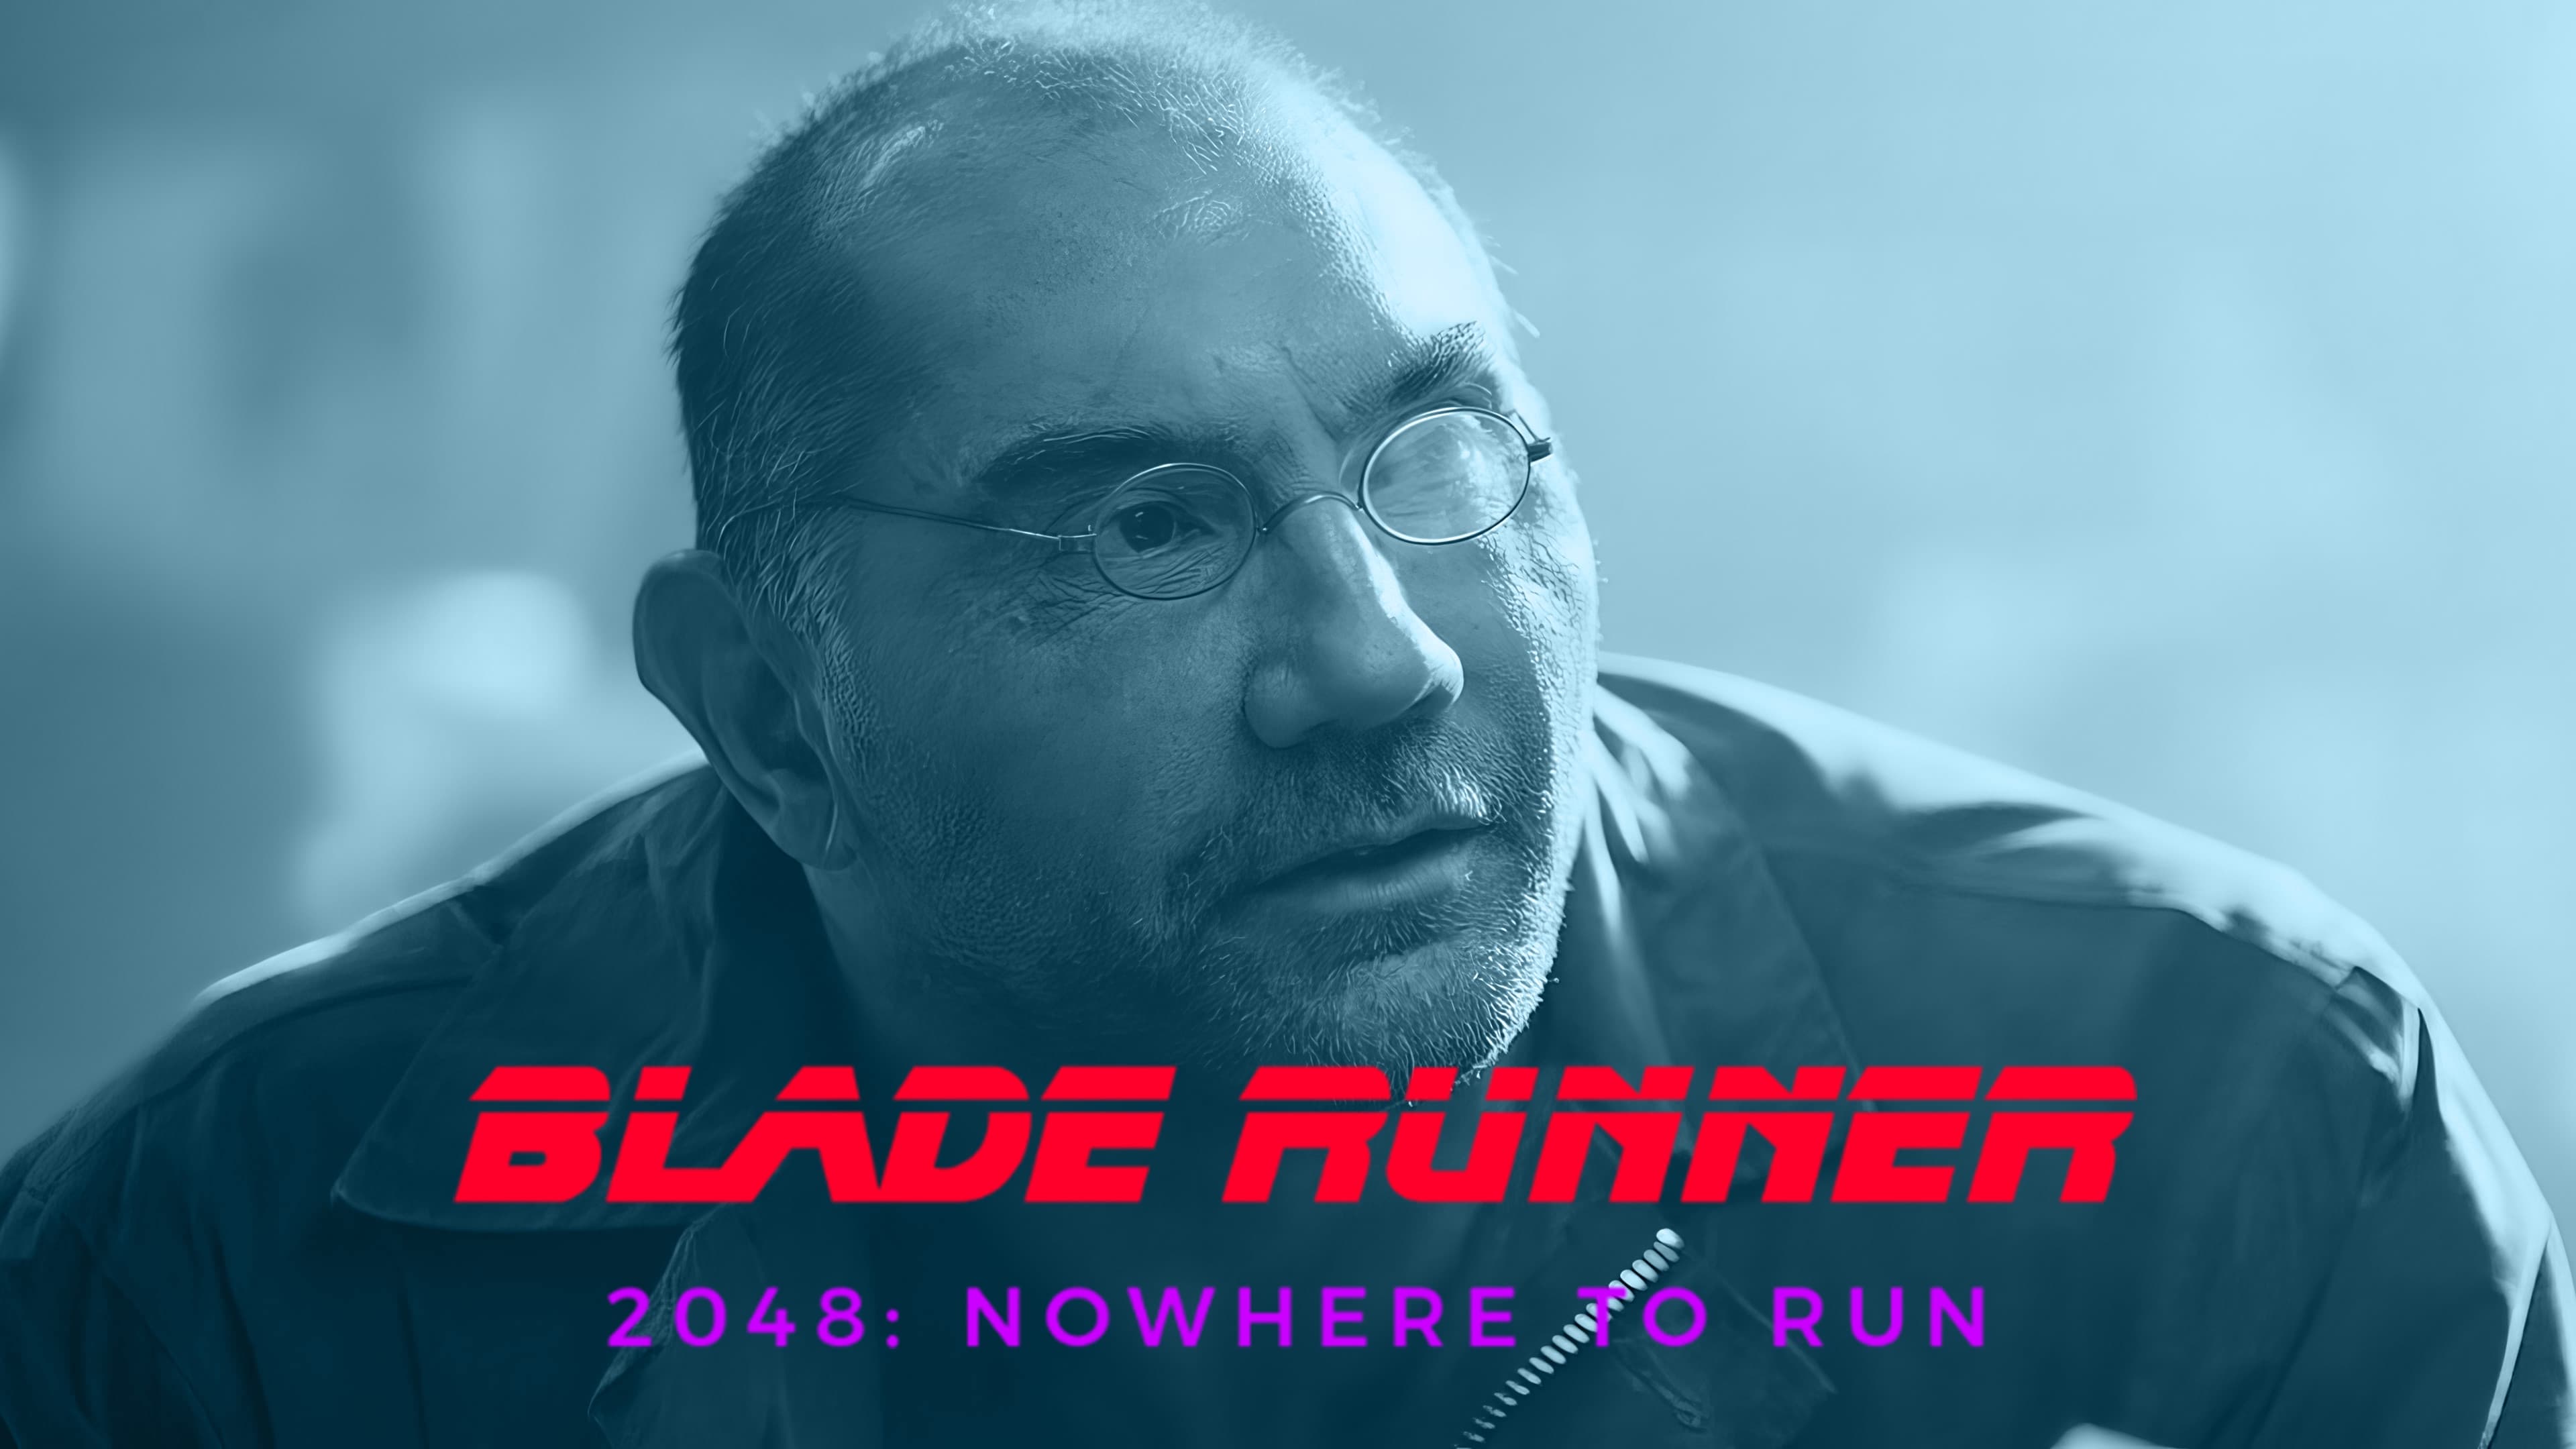 Blade Runner 2048 - Nowhere to Run (2017)